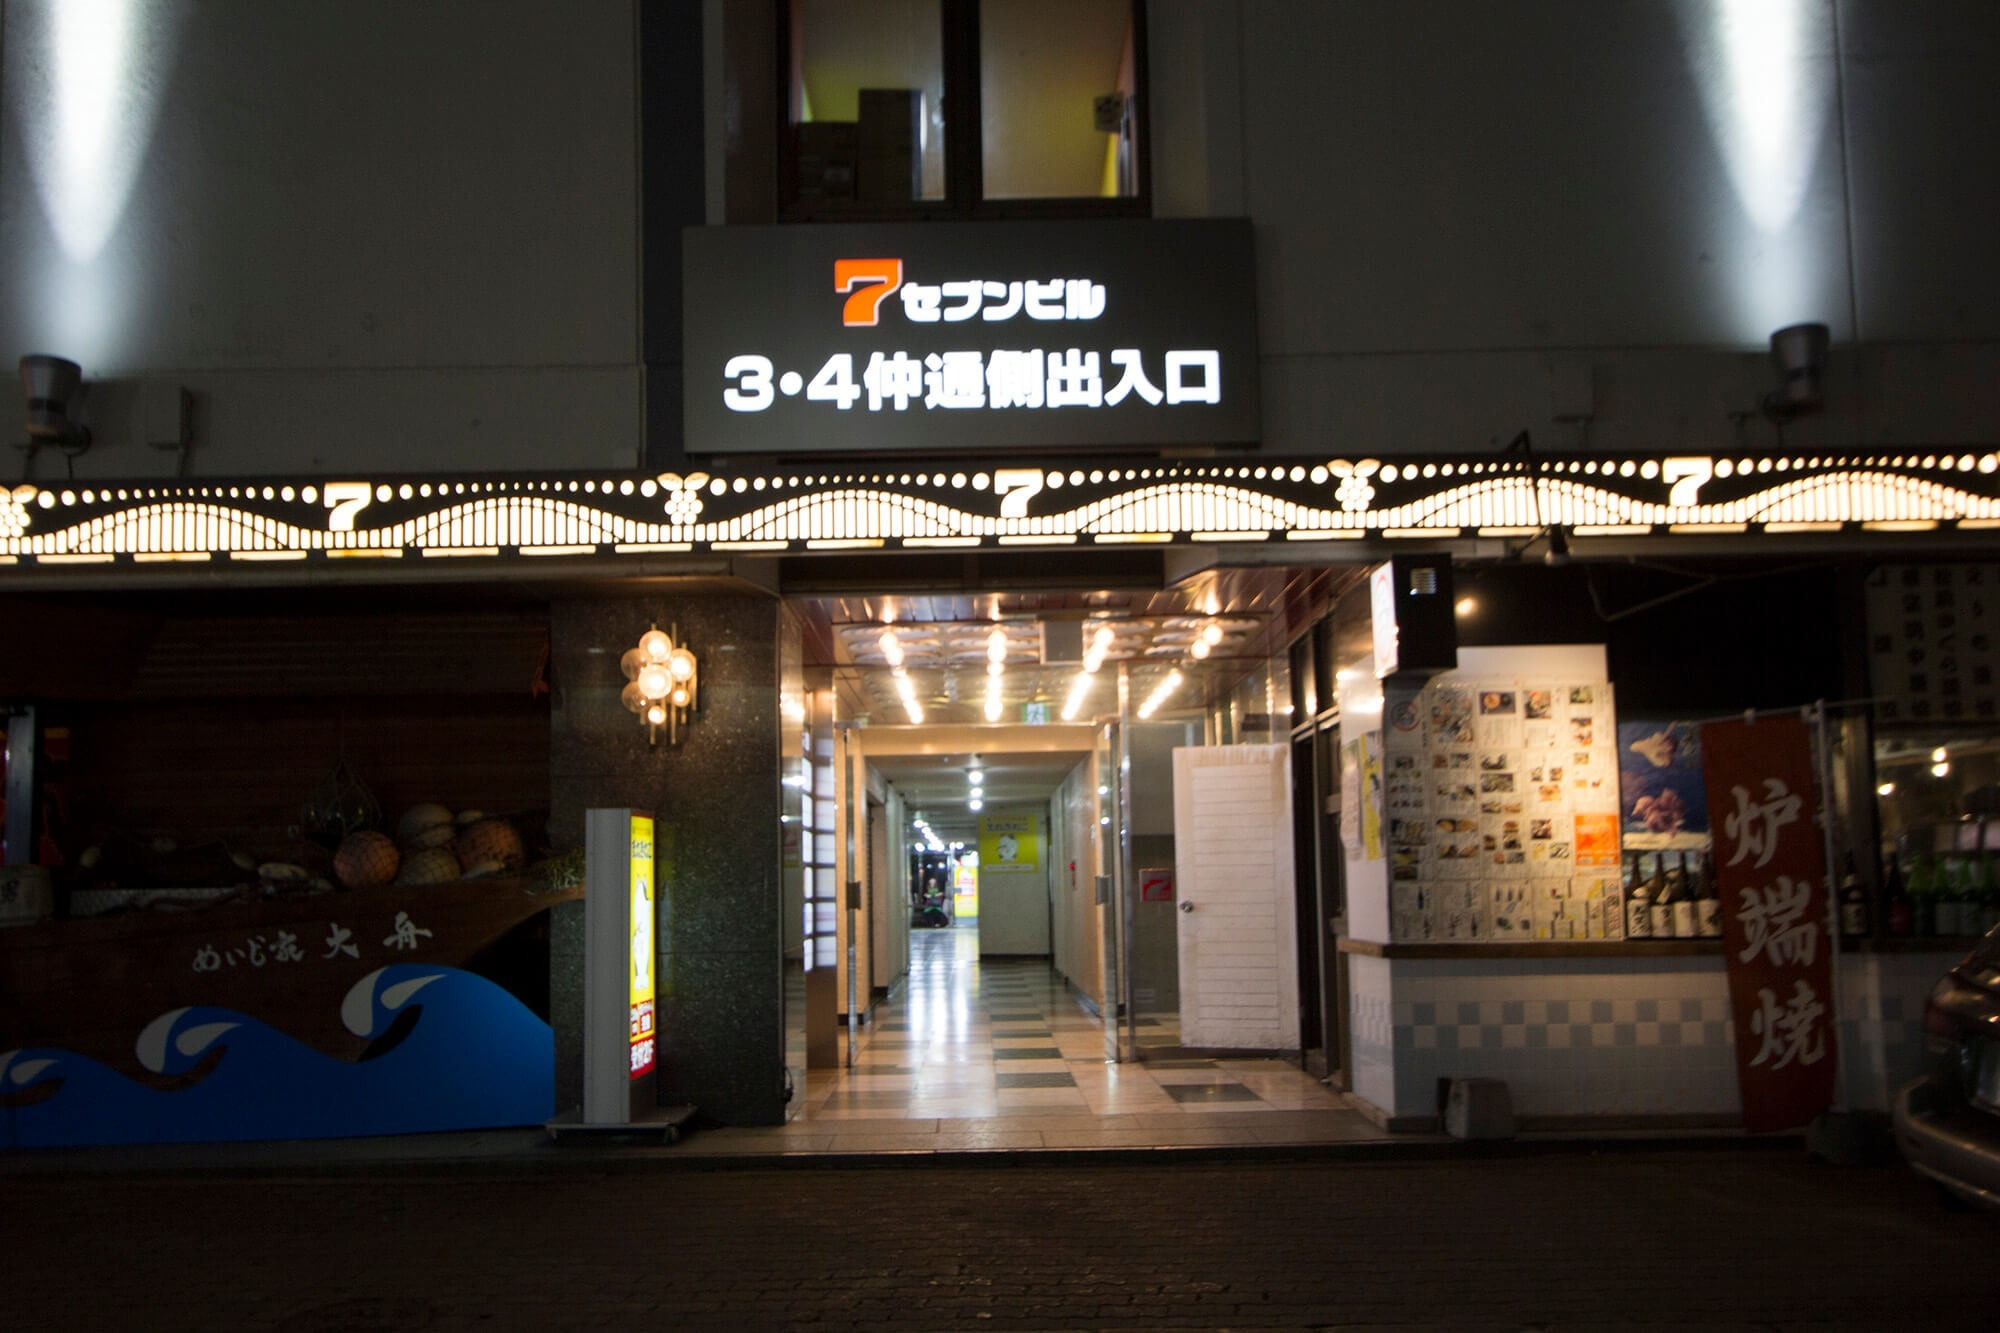 06【Go to Asahikawa】旭川駅近MAX10 FreeWi-Fi 繫華 三六 コンビニ